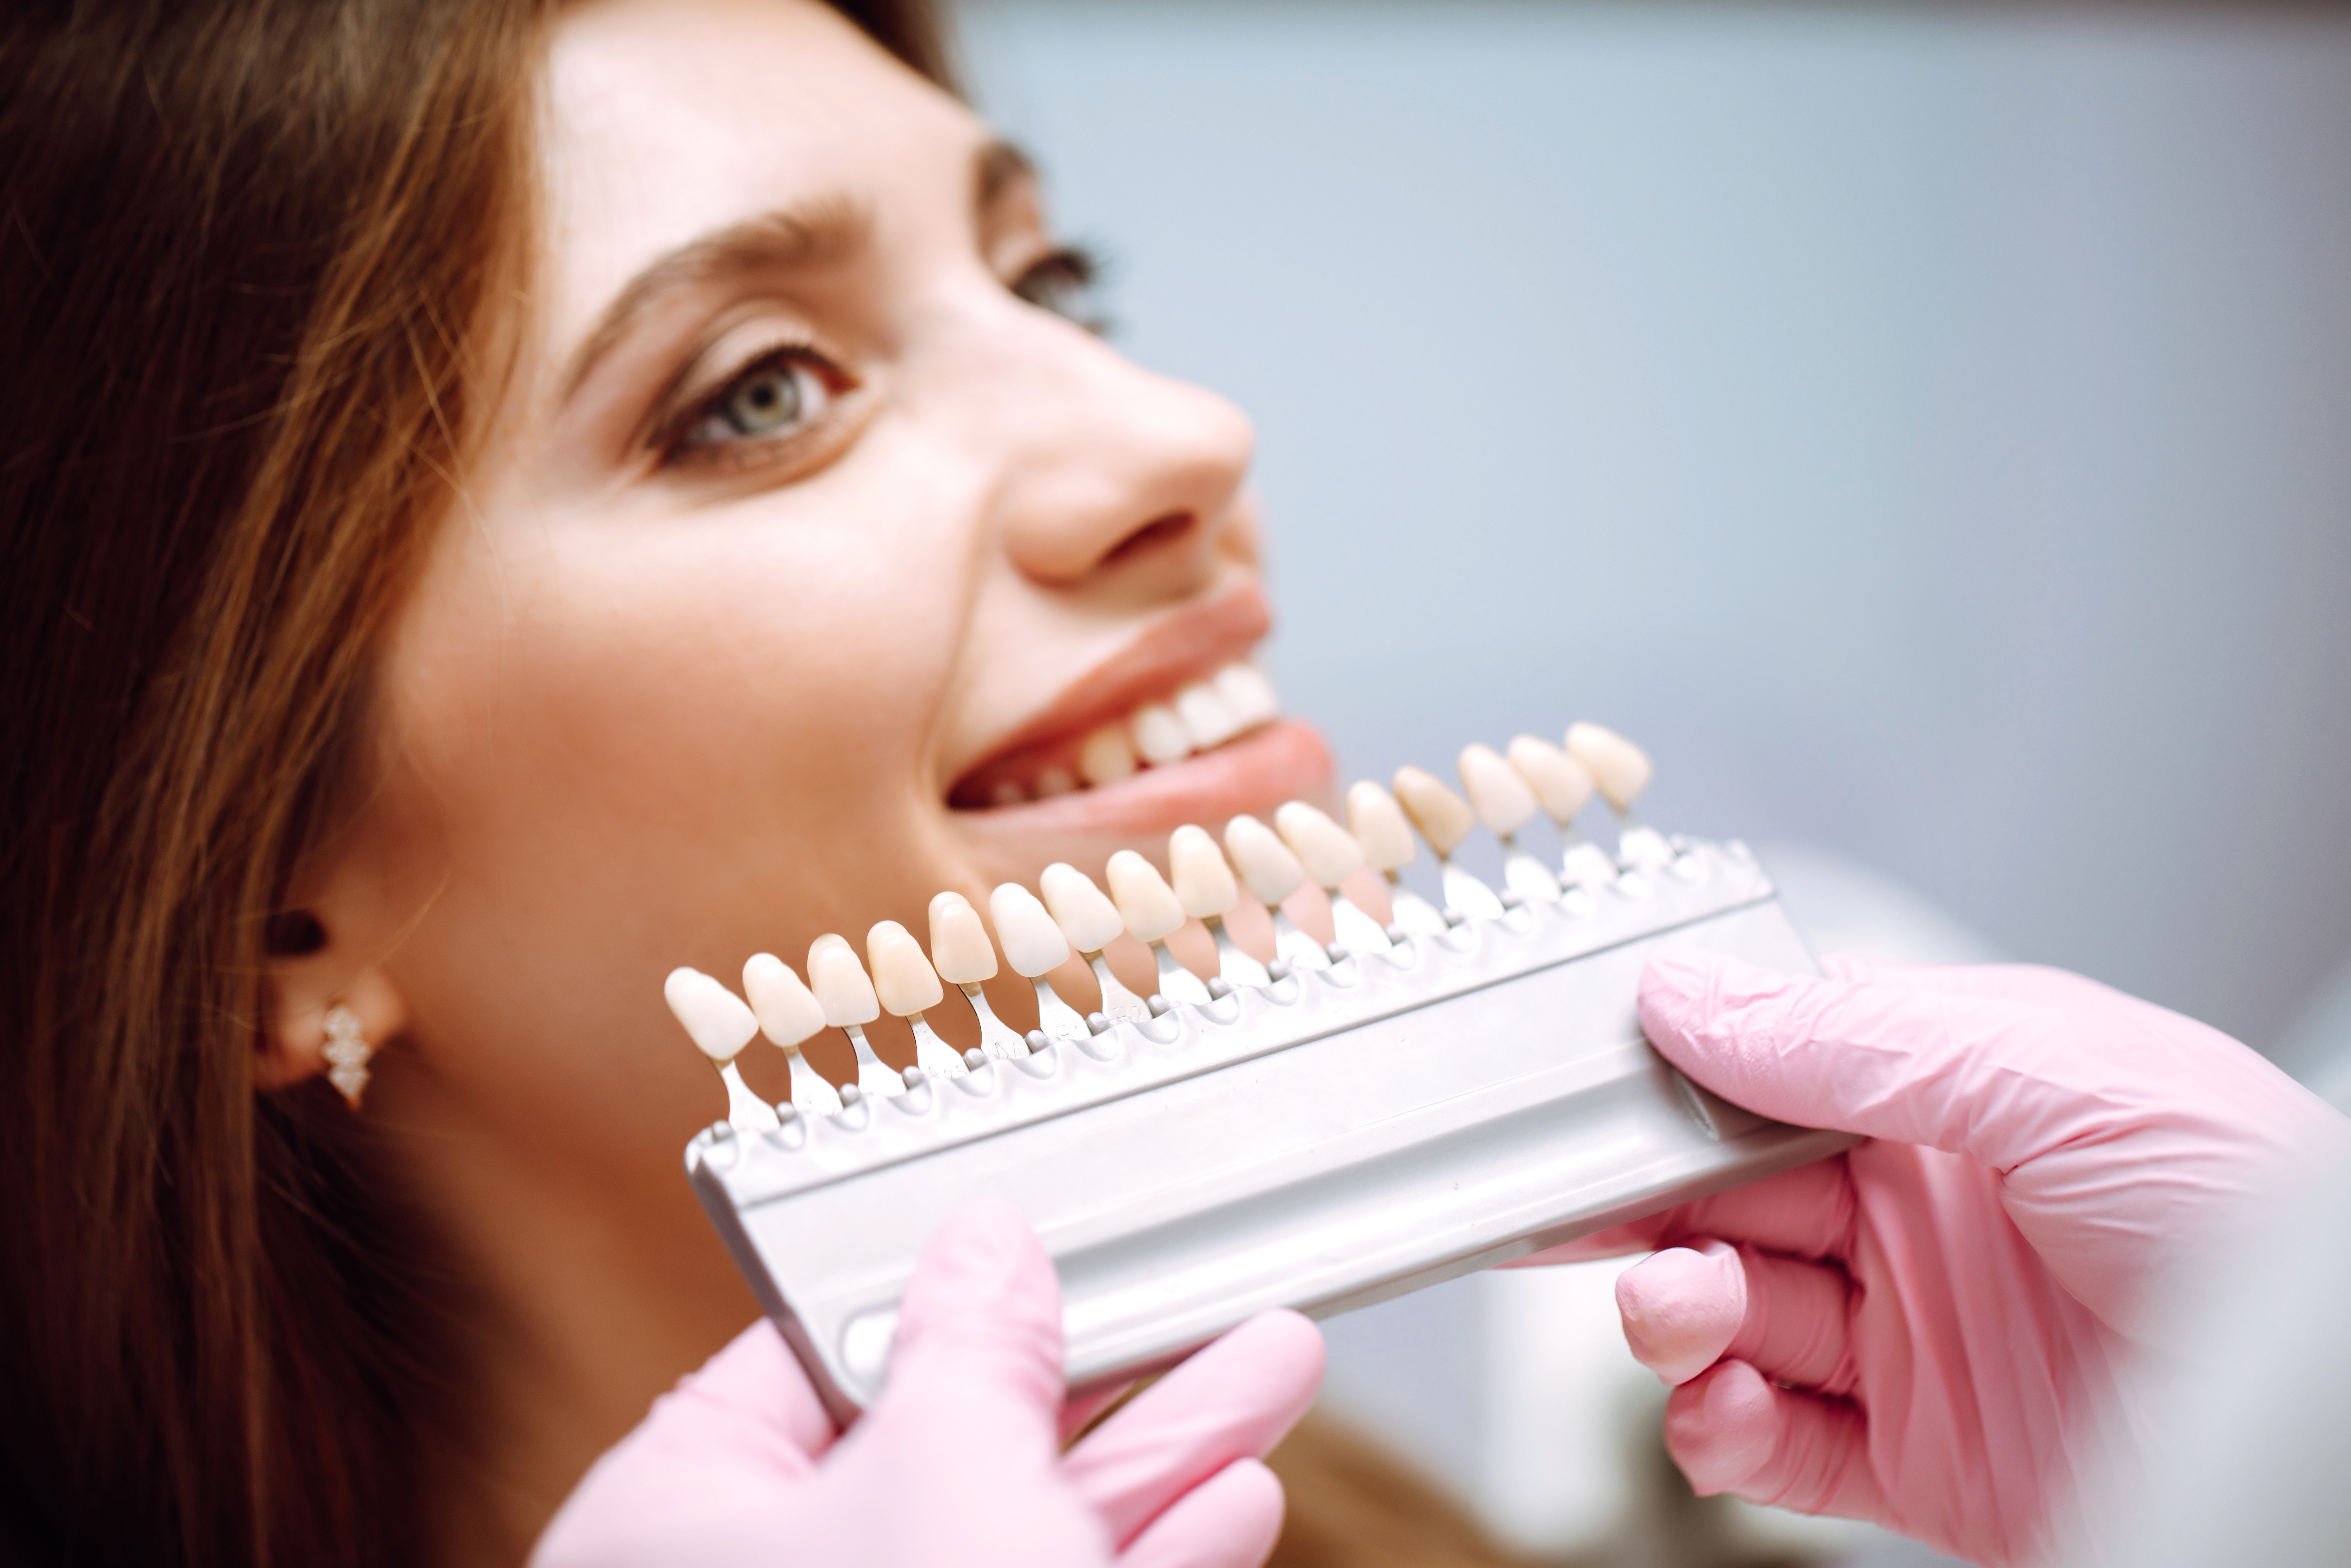 How to get affordable dental veneers